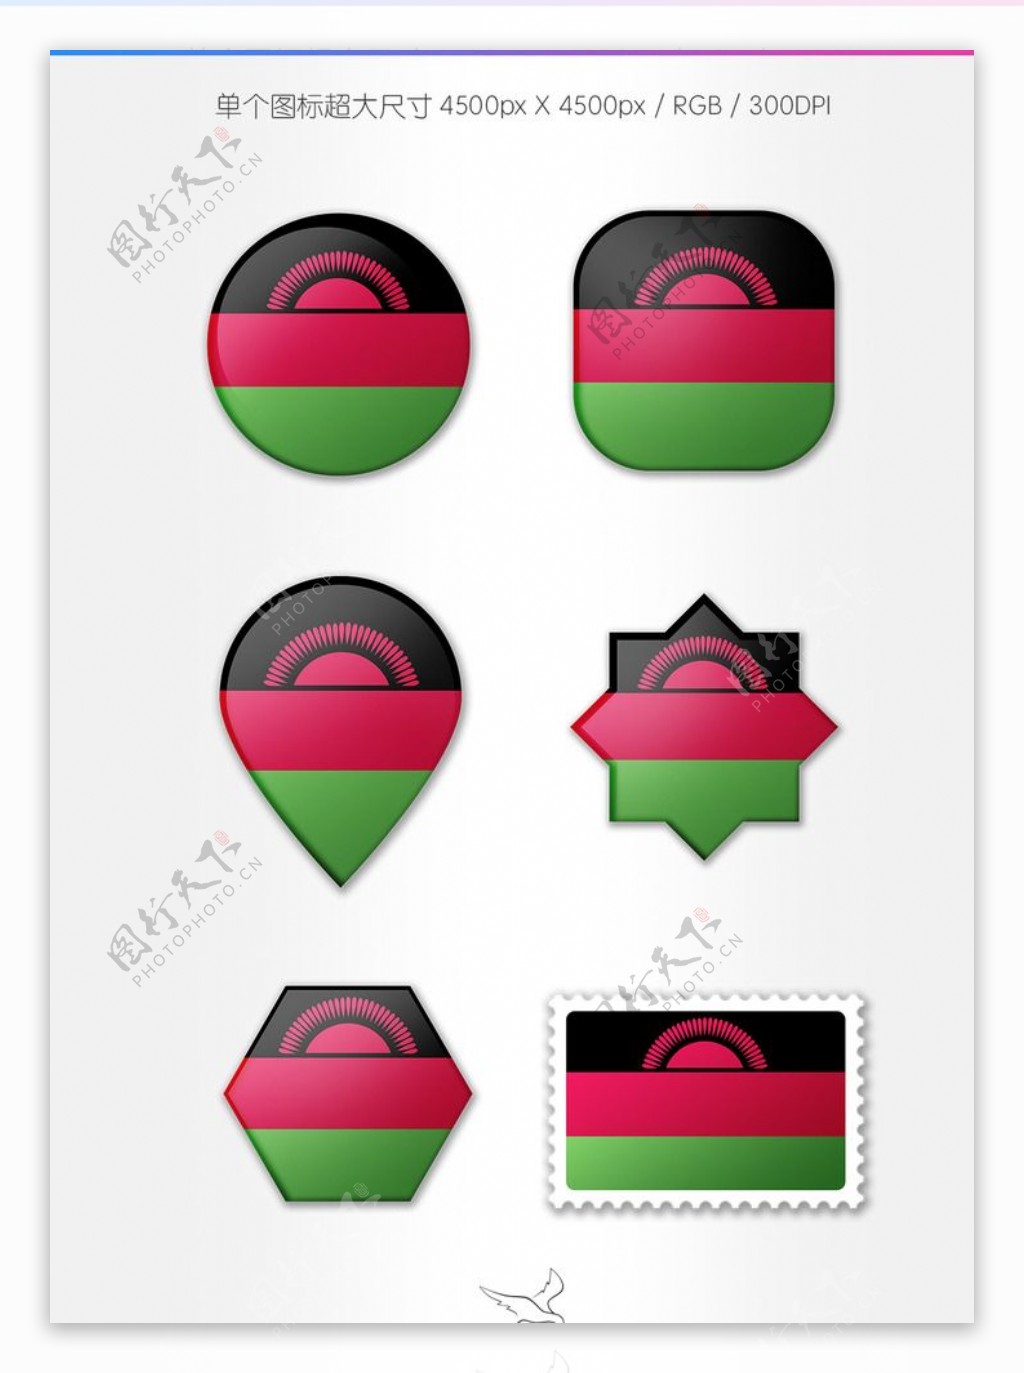 马拉维国旗图标